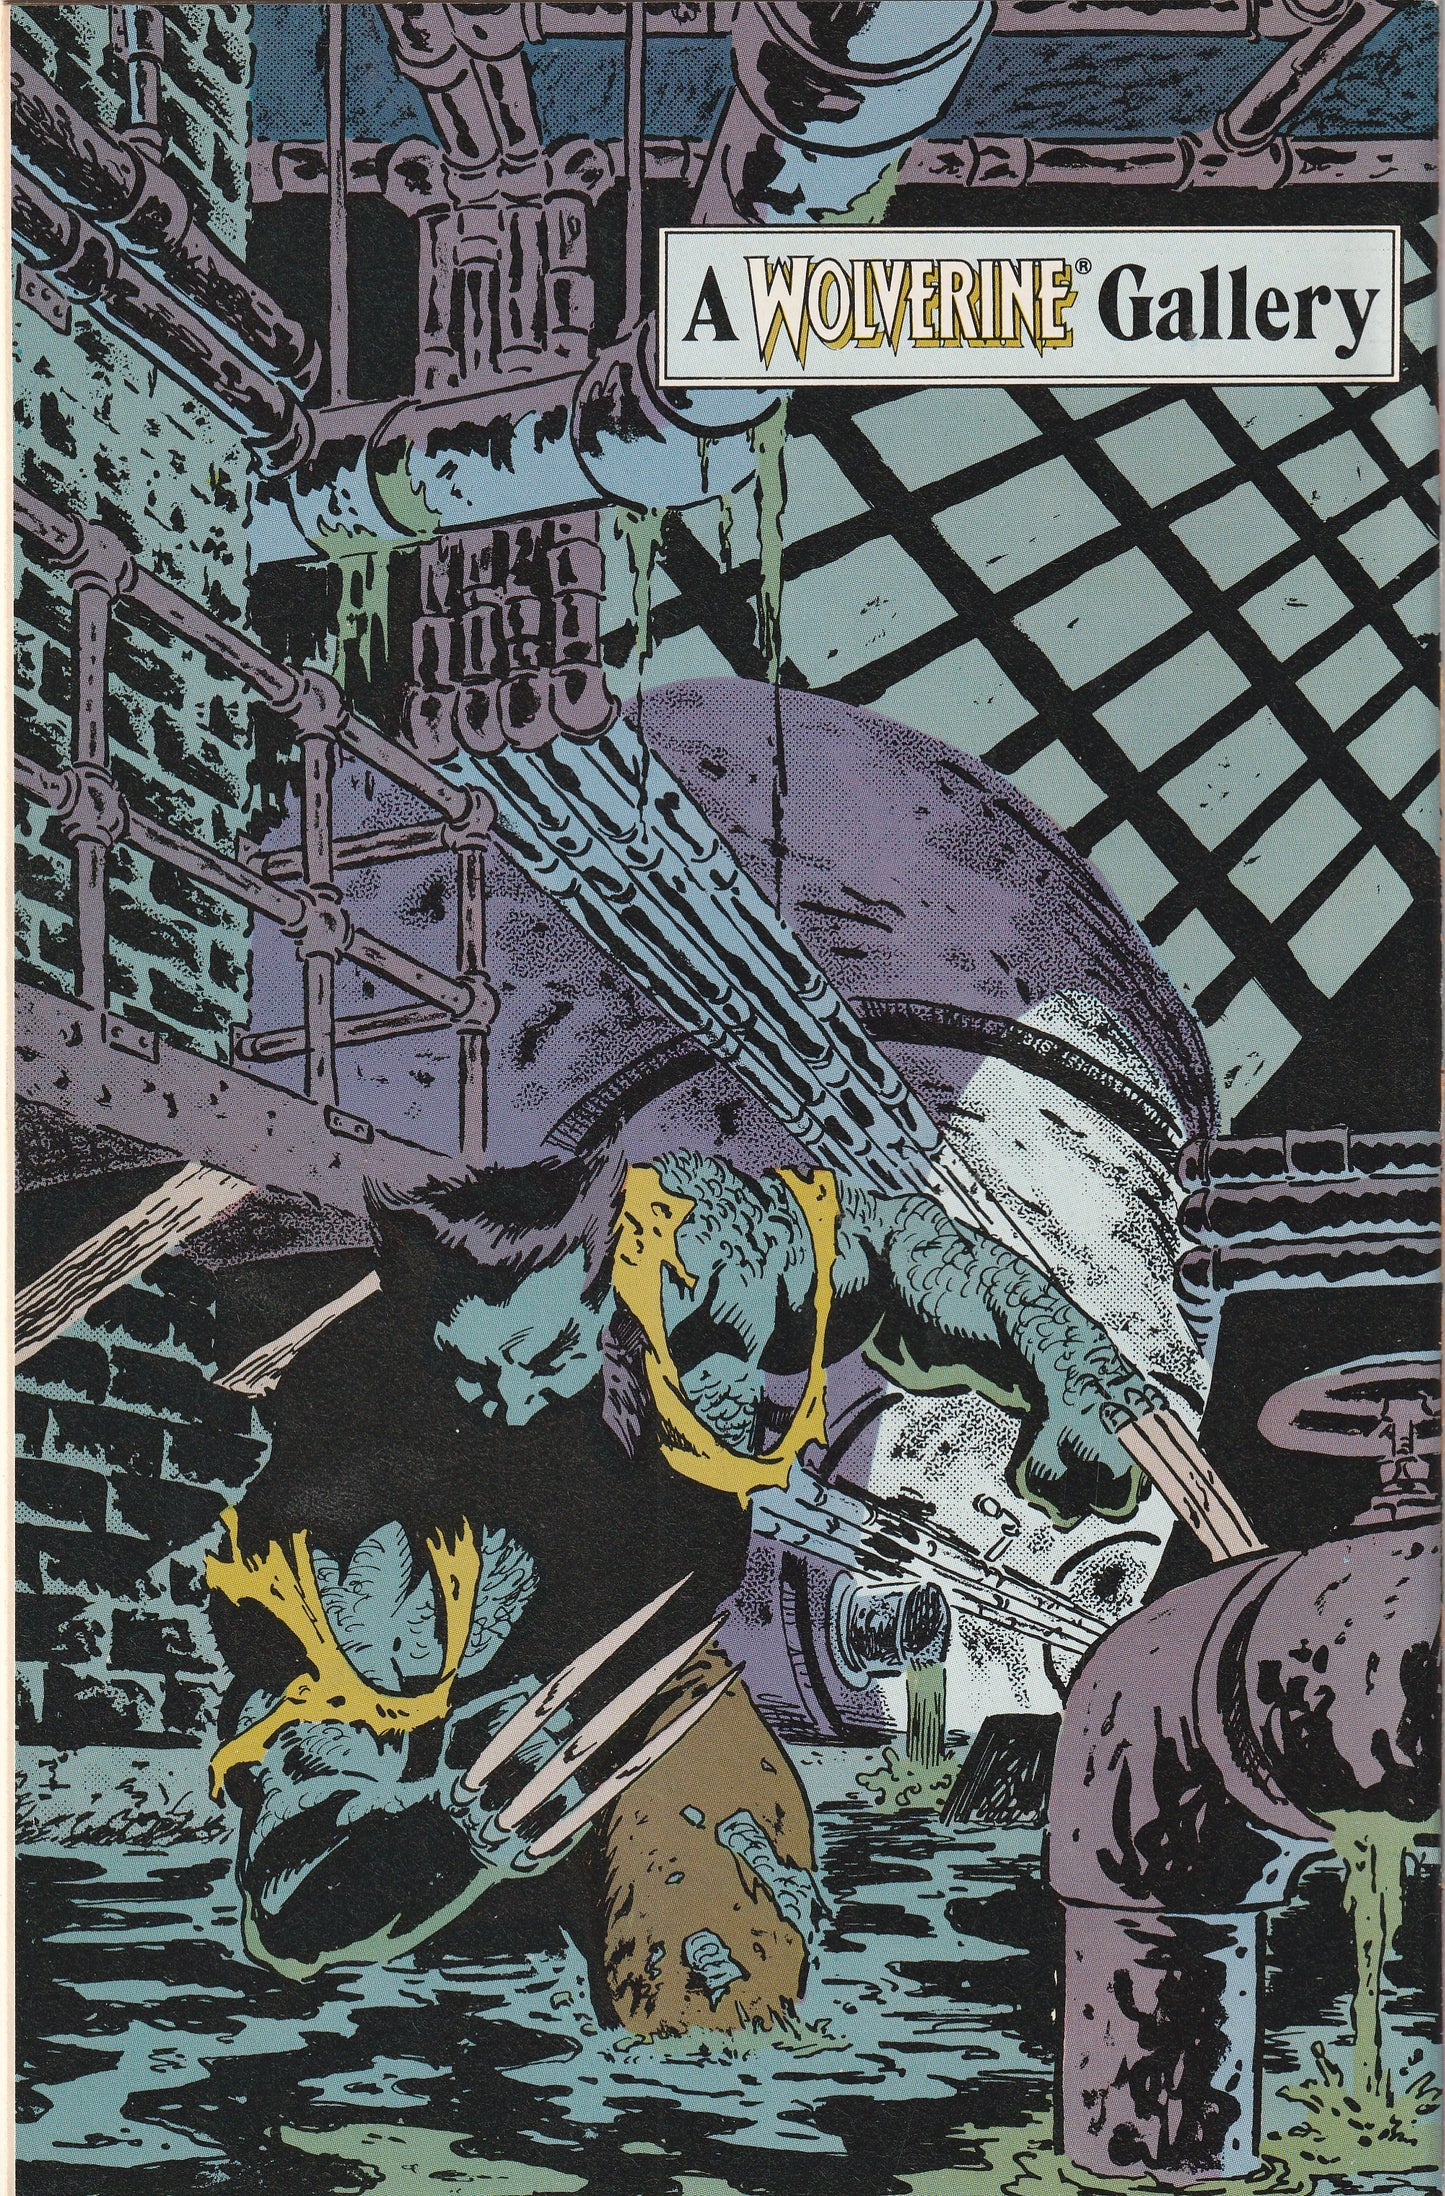 Wolverine #9 (1989)